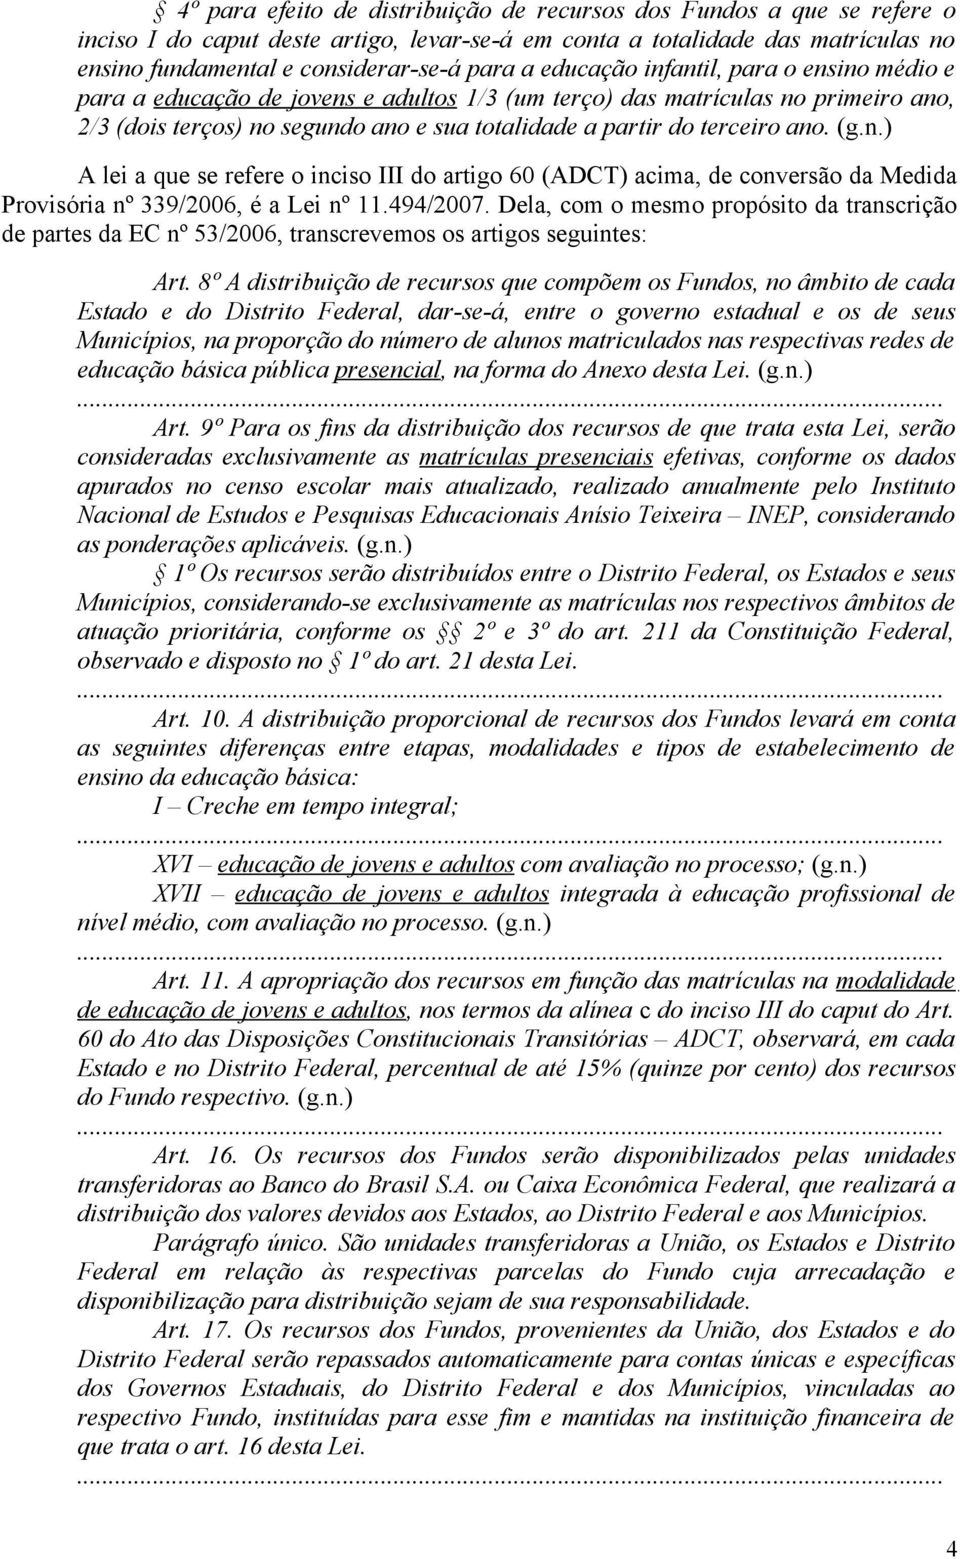 (gn) A lei a que se refere o inciso III do artigo 60 (ADCT) acima, de conversão da Medida Provisória nº 339/2006, é a Lei nº 11494/2007 Dela, com o mesmo propósito da transcrição de partes da EC nº